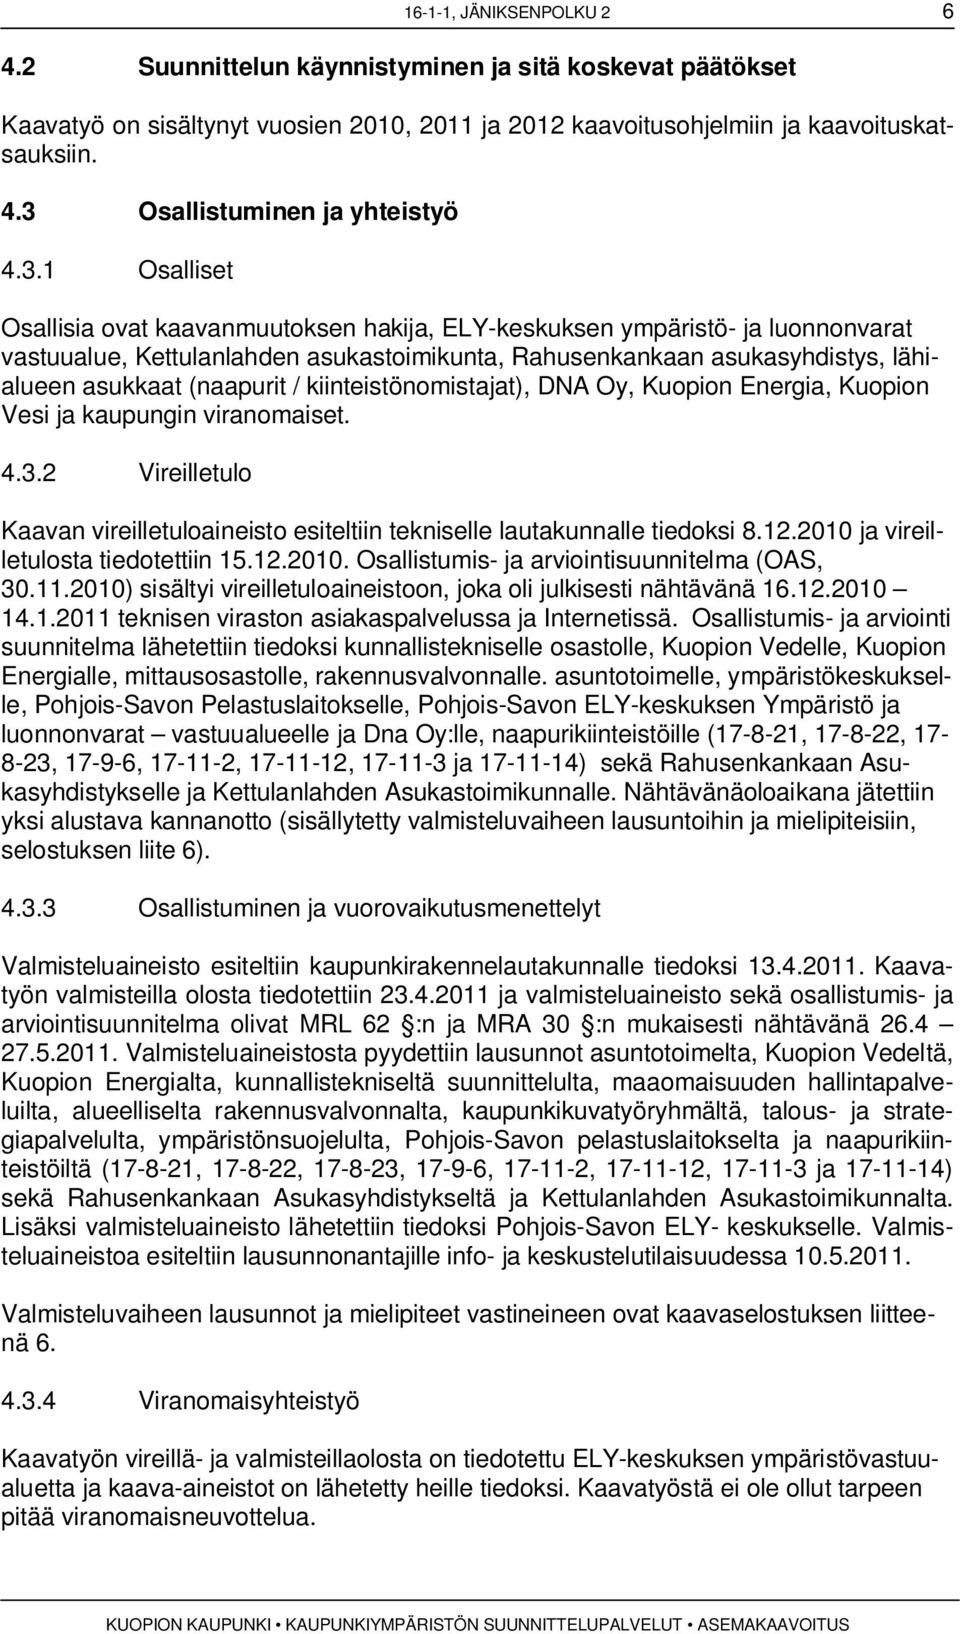 / kiinteistönomistajat), DNA Oy, Kuopion Energia, Kuopion Vesi ja kaupungin viranomaiset. 4.3.2 Vireilletulo Kaavan vireilletuloaineisto esiteltiin tekniselle lautakunnalle tiedoksi 8.12.